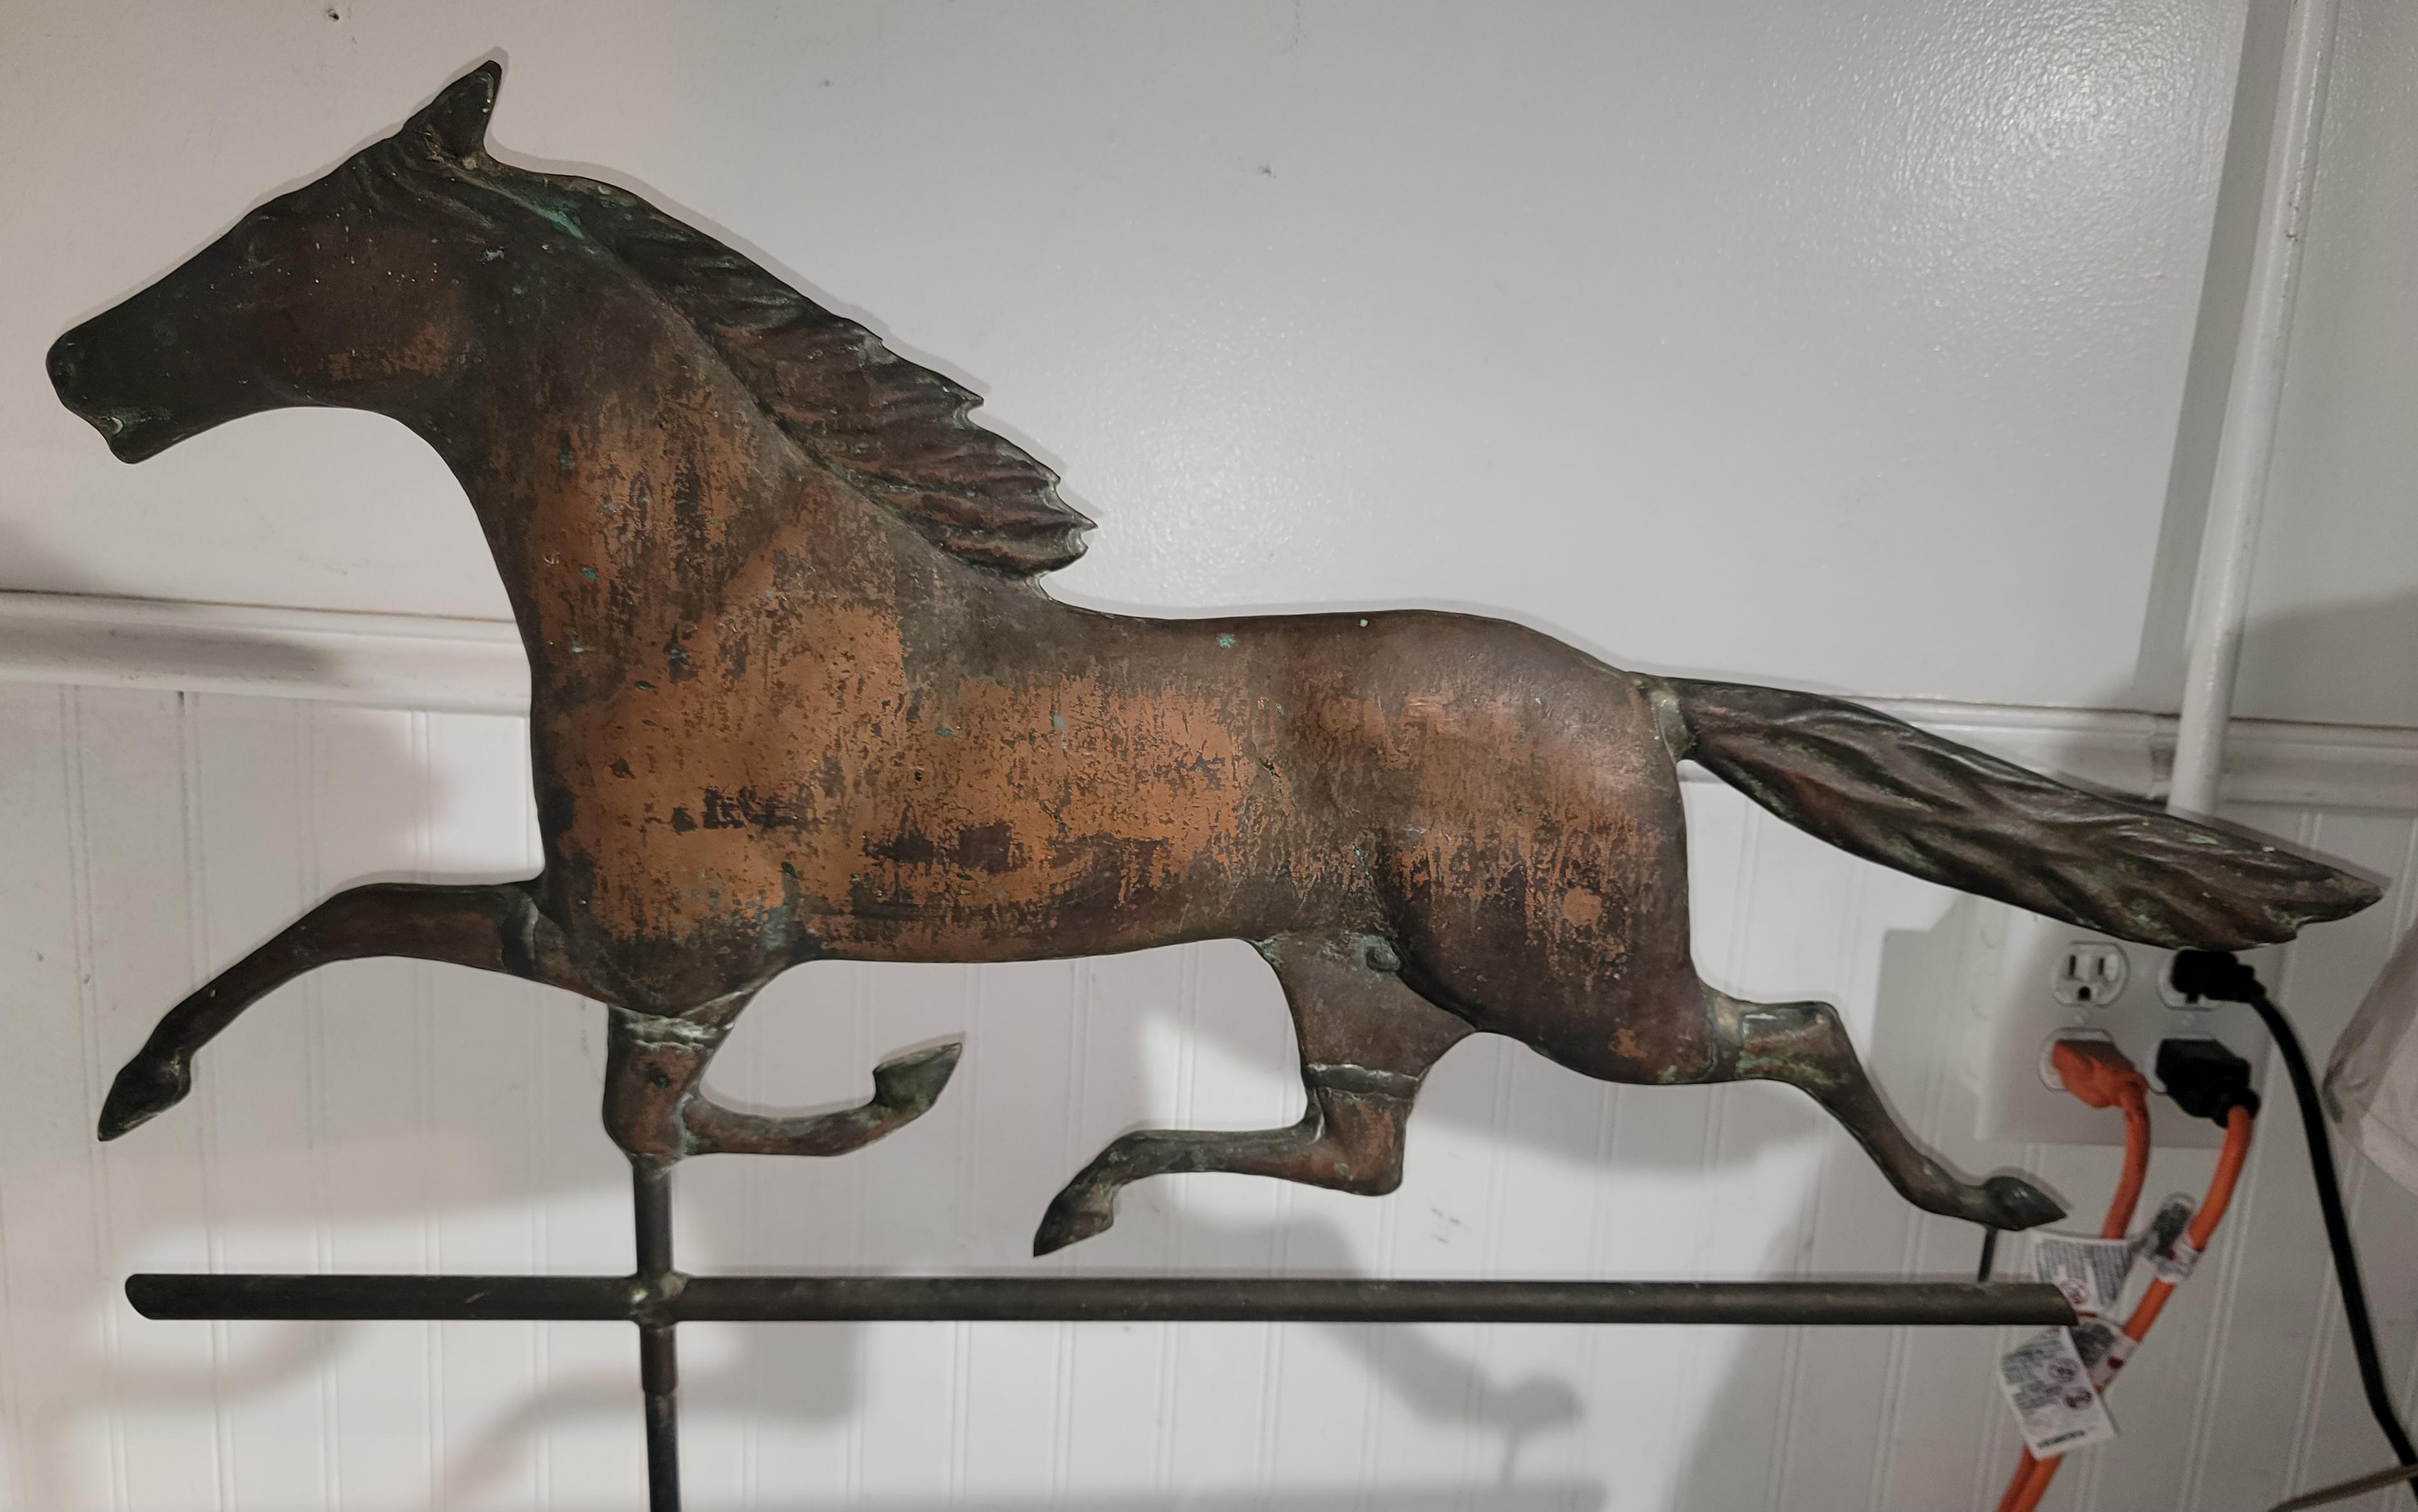 Cette girouette de cheval en cuivre a une patine étonnante.  Collection A. Trouvé dans une collection privée d'art populaire. La forme est étonnante avec une forme si gracieuse.

La hauteur et le poids peuvent varier légèrement car nous pouvons